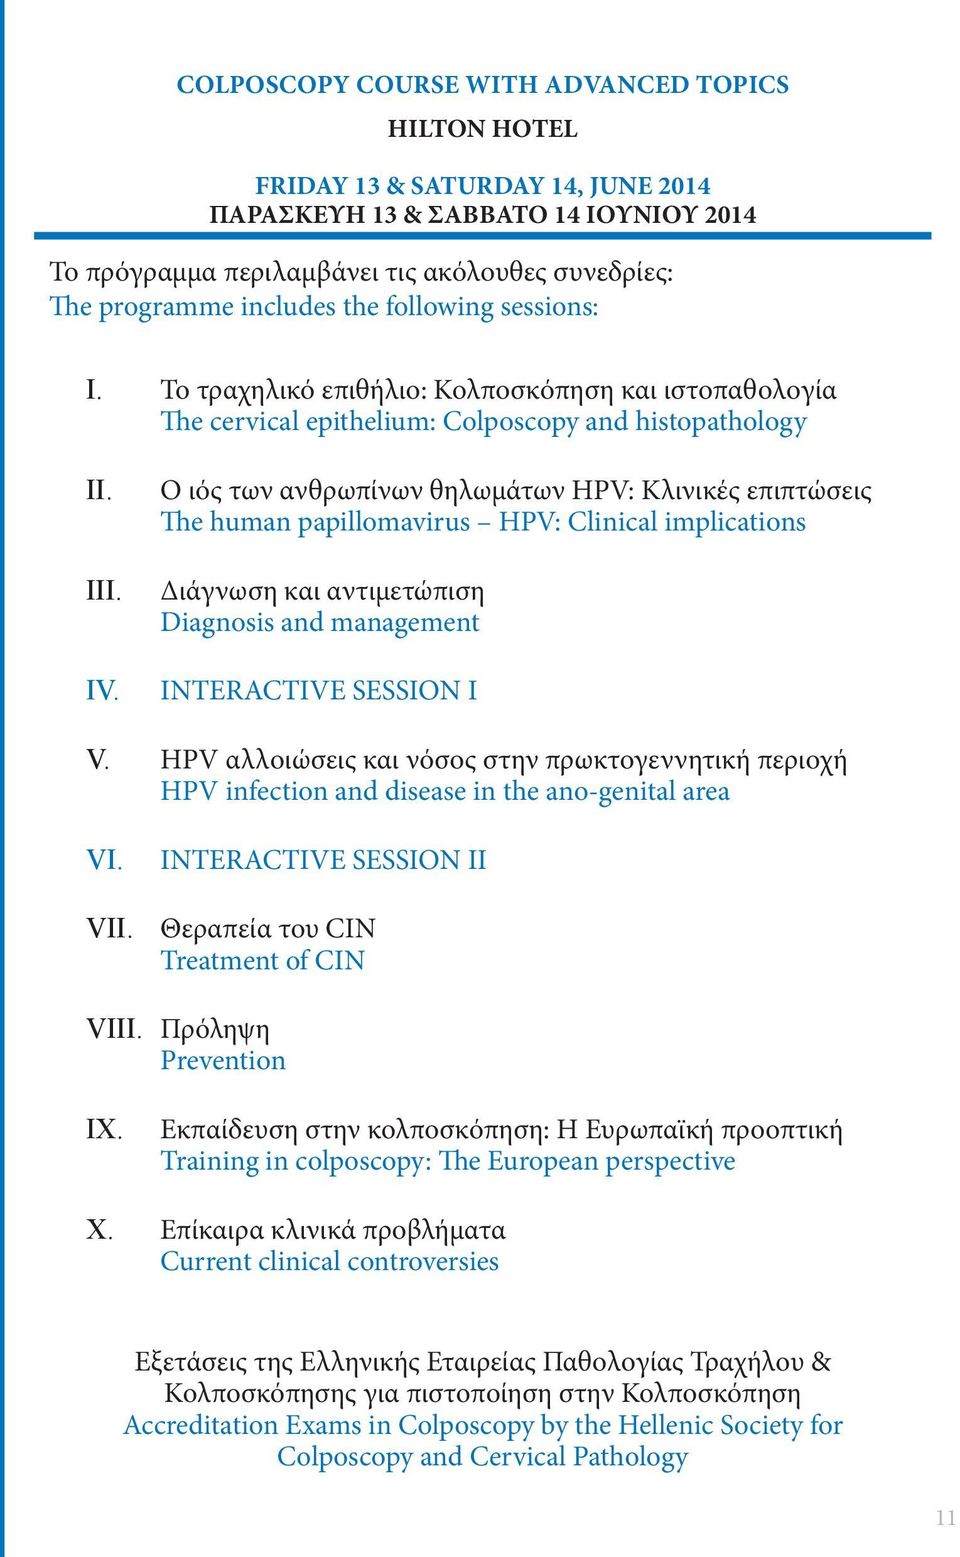 ιός των ανθρωπίνων θηλωμάτων HPV: Κλινικές επιπτώσεις he human papillomavirus HPV: linical implications Διάγνωση και αντιμετώπιση Diagnosis and management IRAIV I I V.